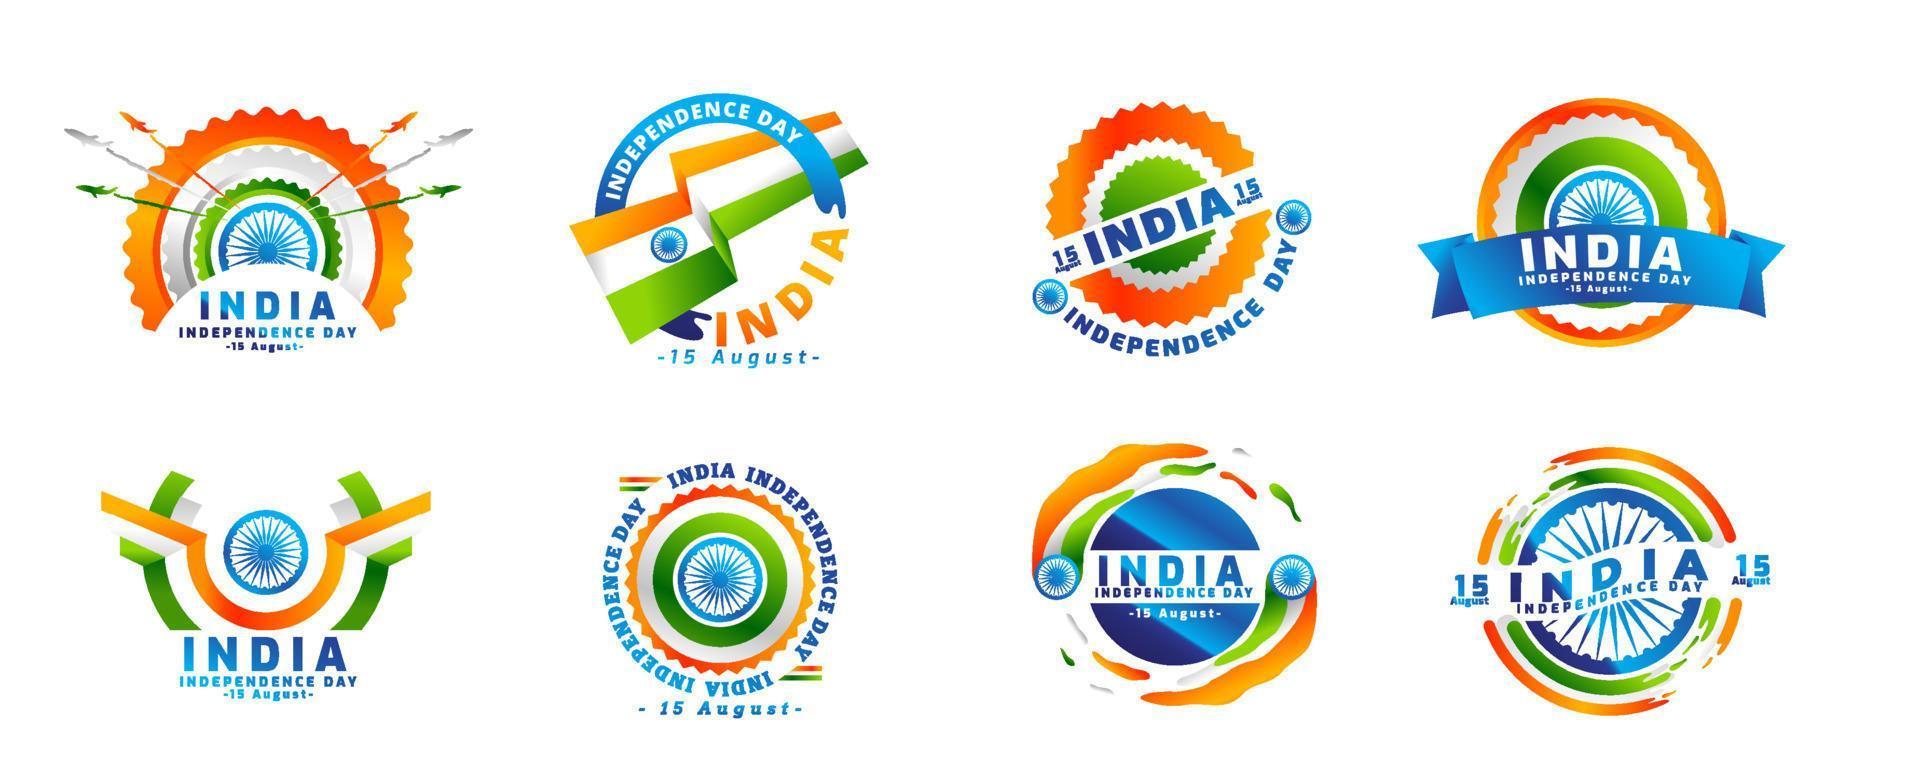 logo indischer unabhängigkeitstag am 15. august. aufkleberset, typografieset, elemente und dekoration vektor